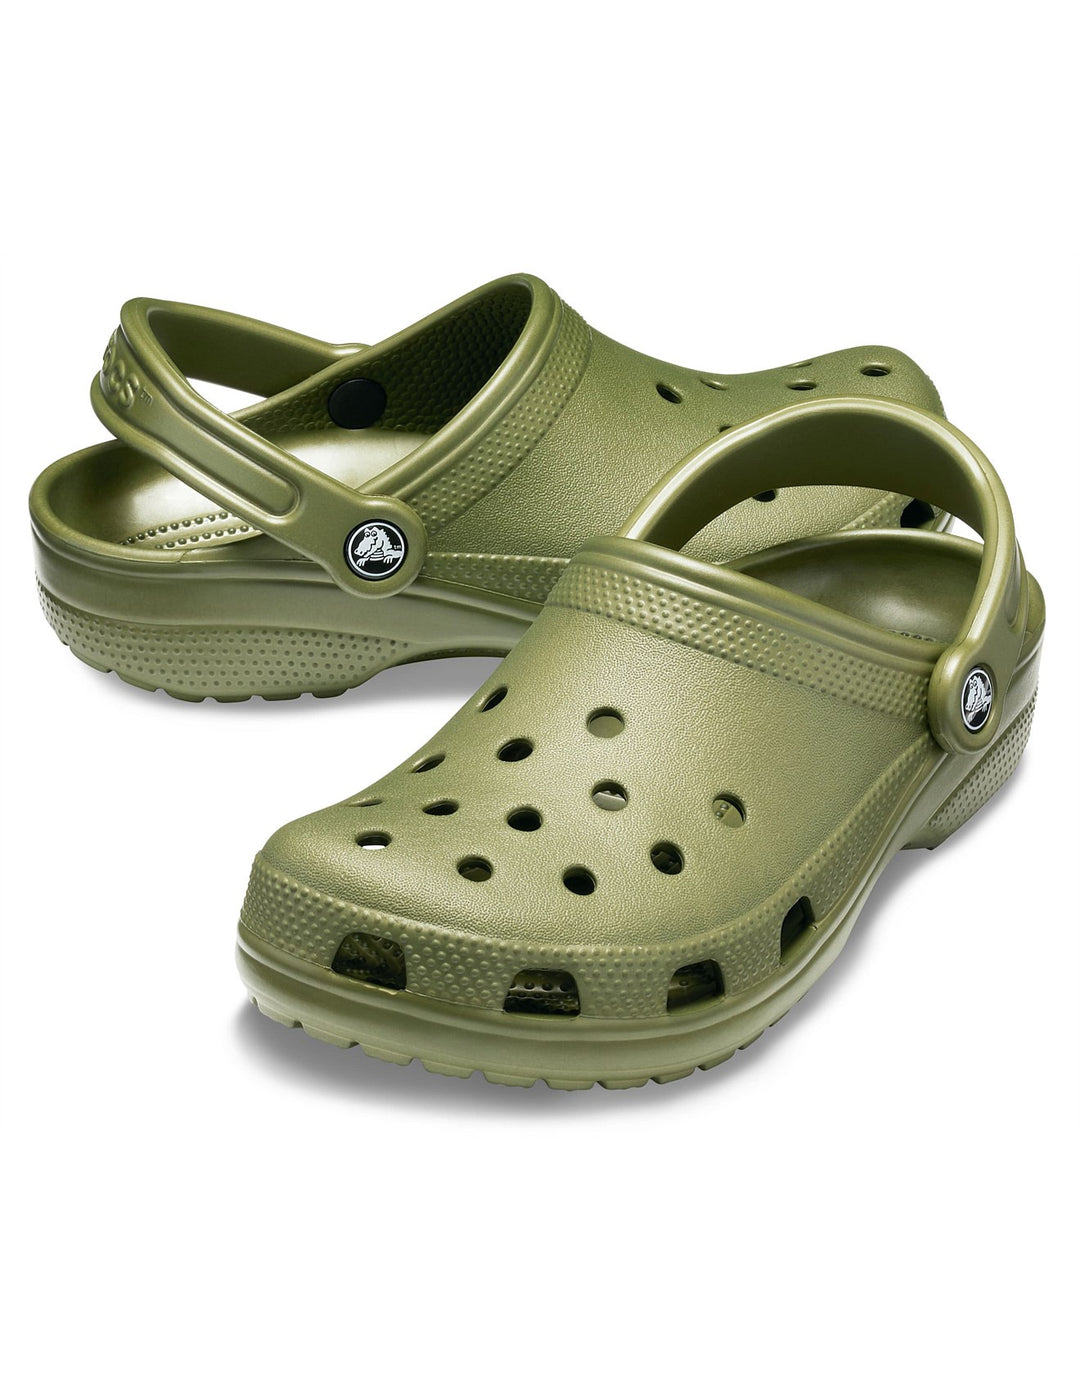 Crocs Classic Clog - Army Green Shoes Crocs   